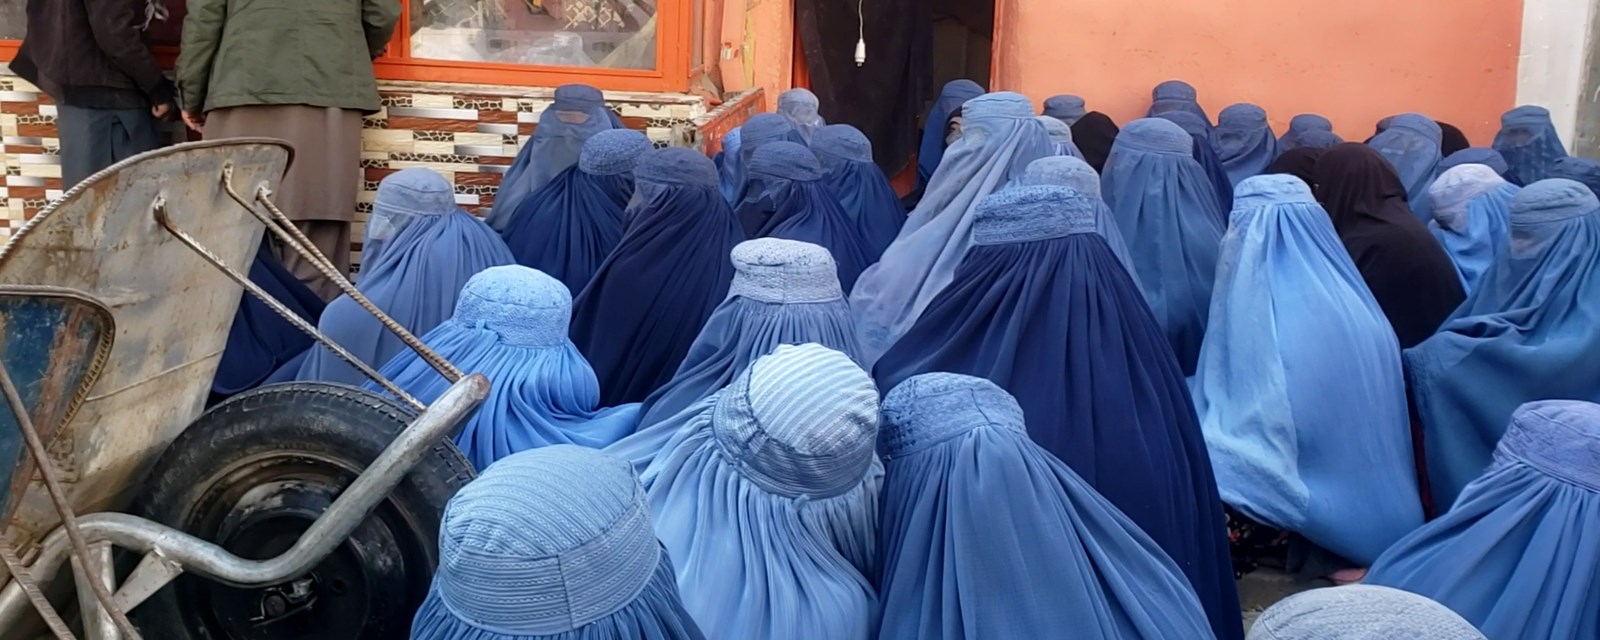 Afghanske kvinner venter foran et bakeri.